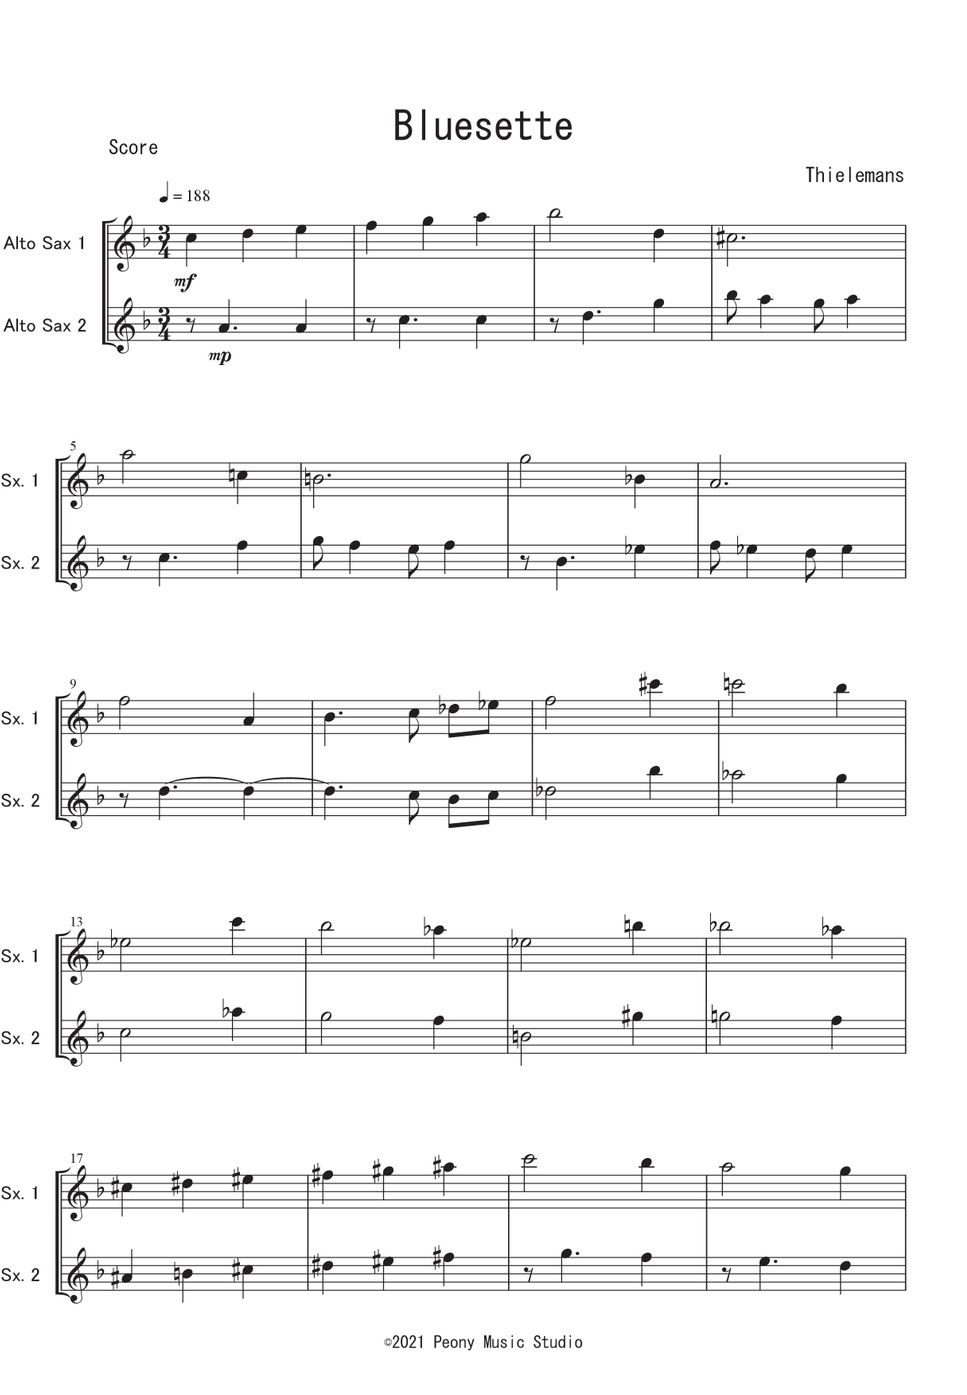 シールマンス - Bluesette (A.Sax二重奏) by Peony